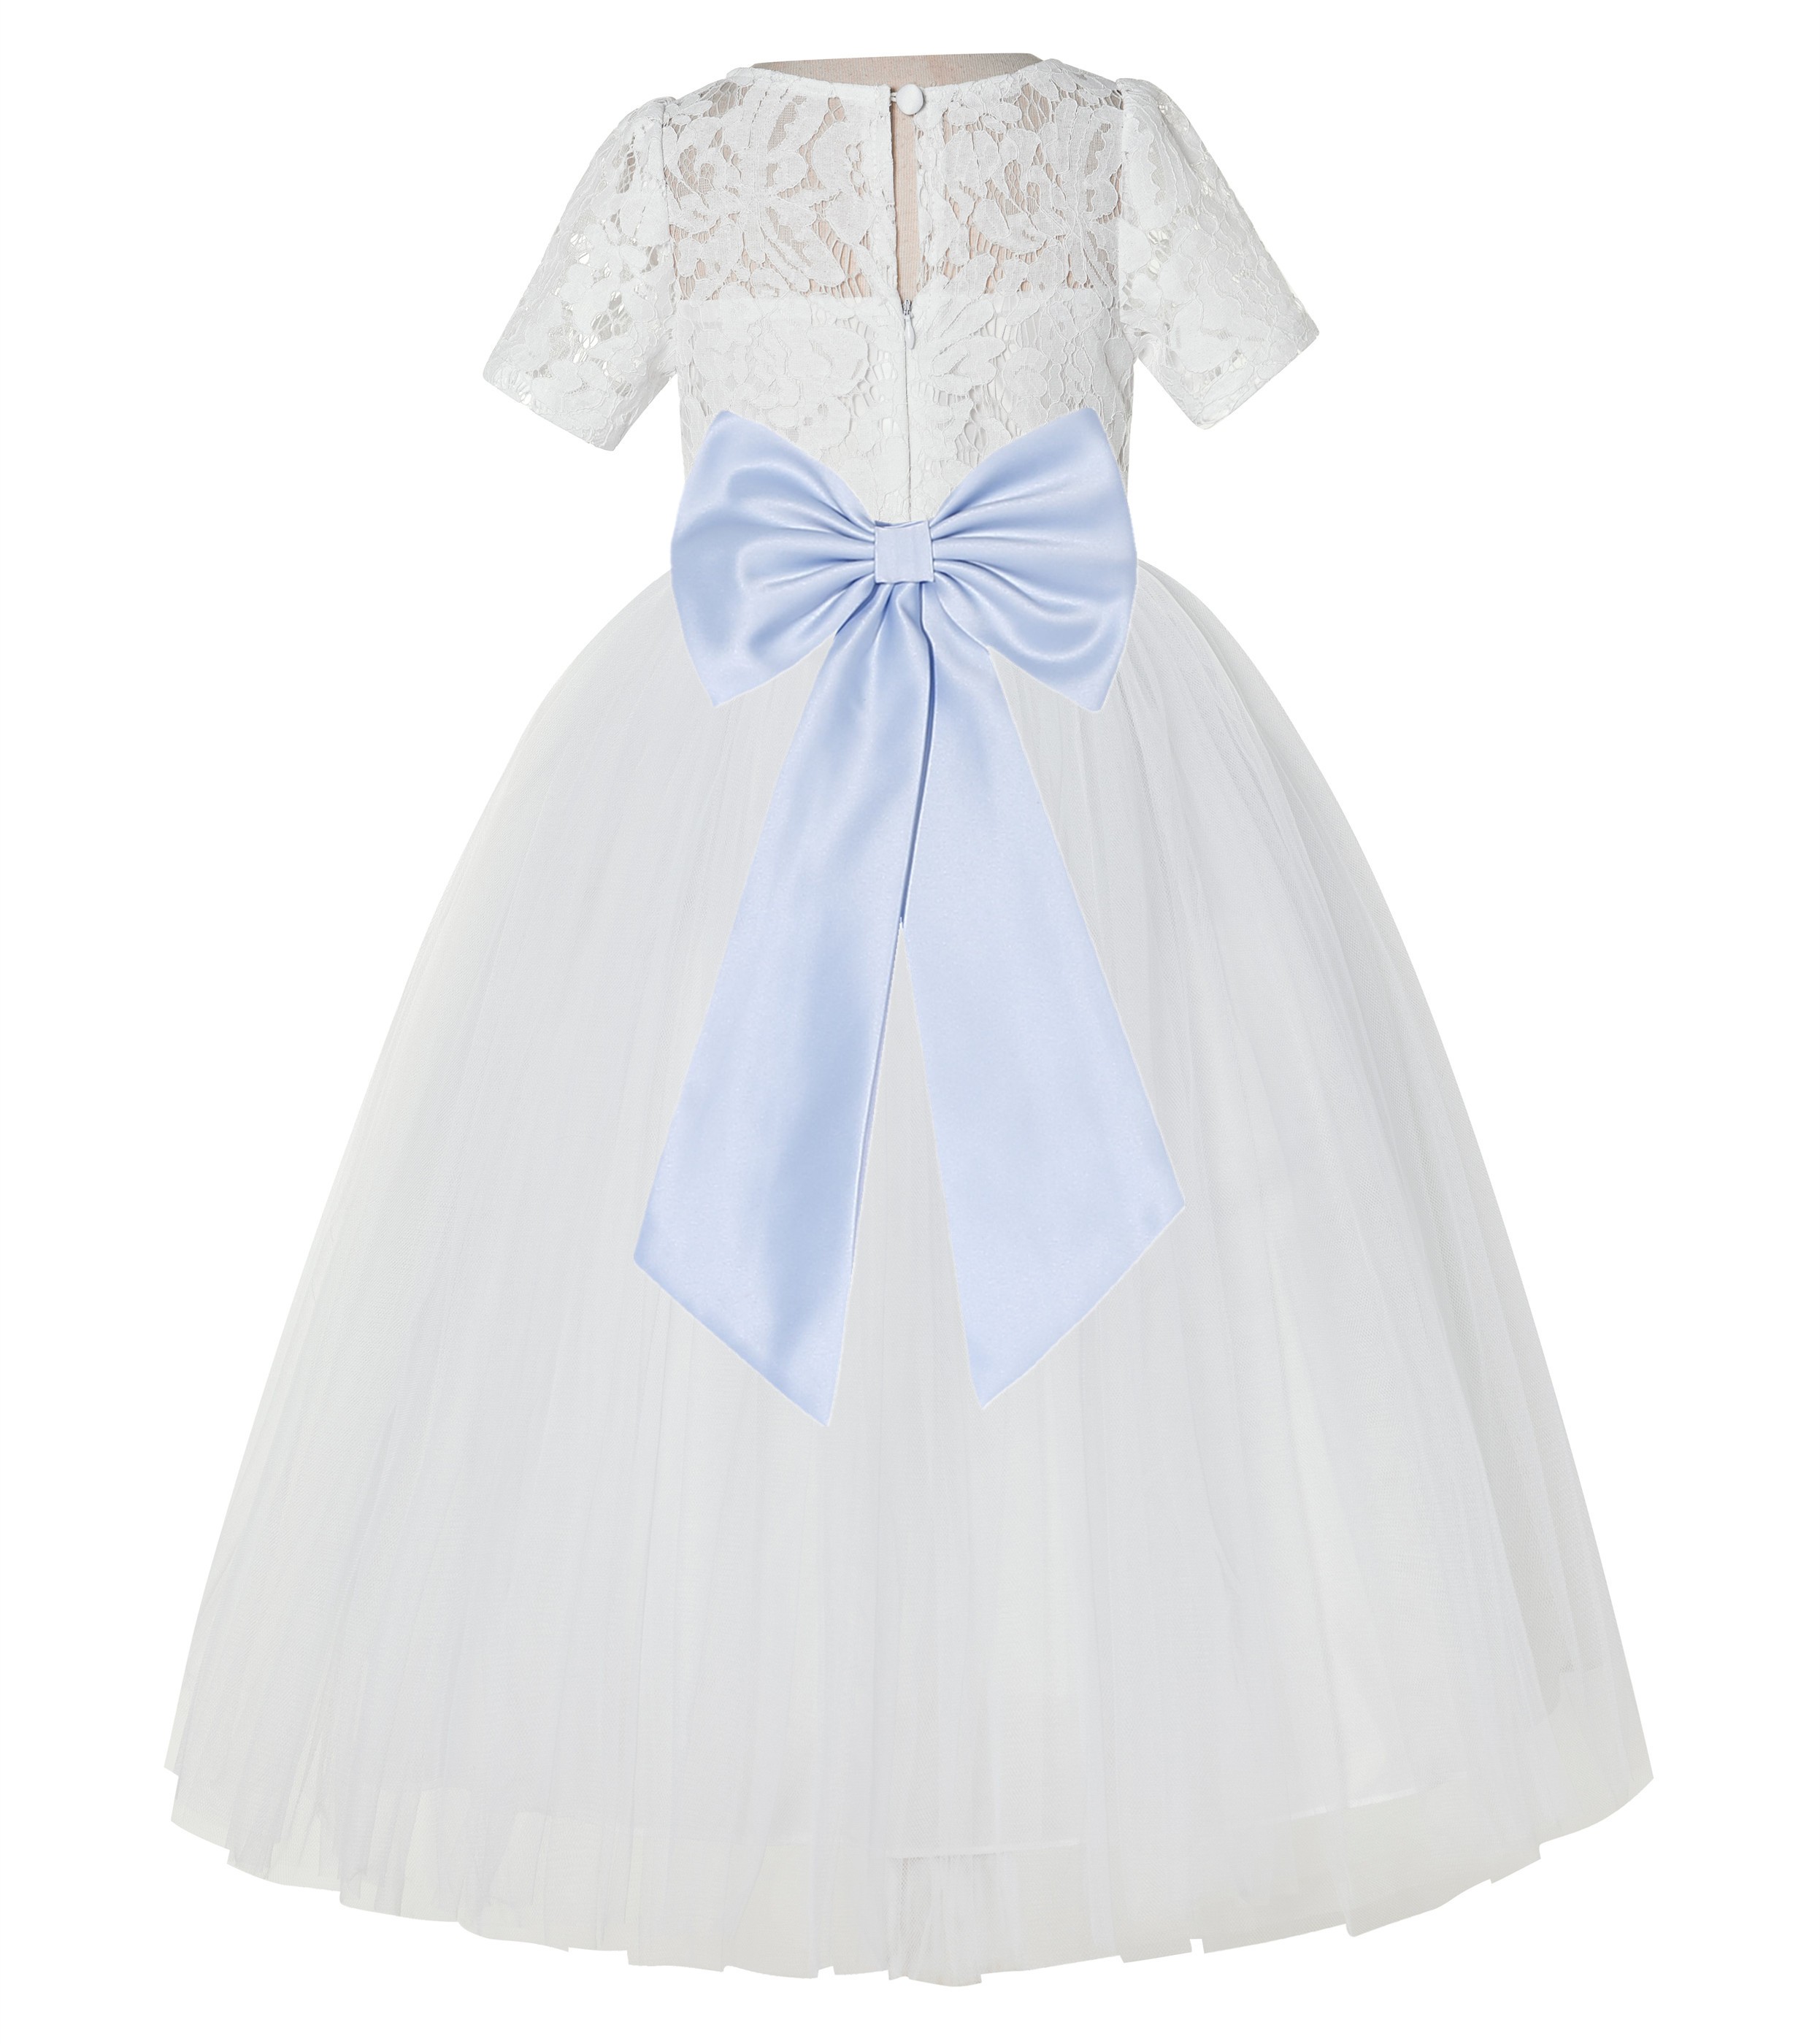 Ivory / Ice Blue Floral Lace Flower Girl Dress Vintage Dress LG2